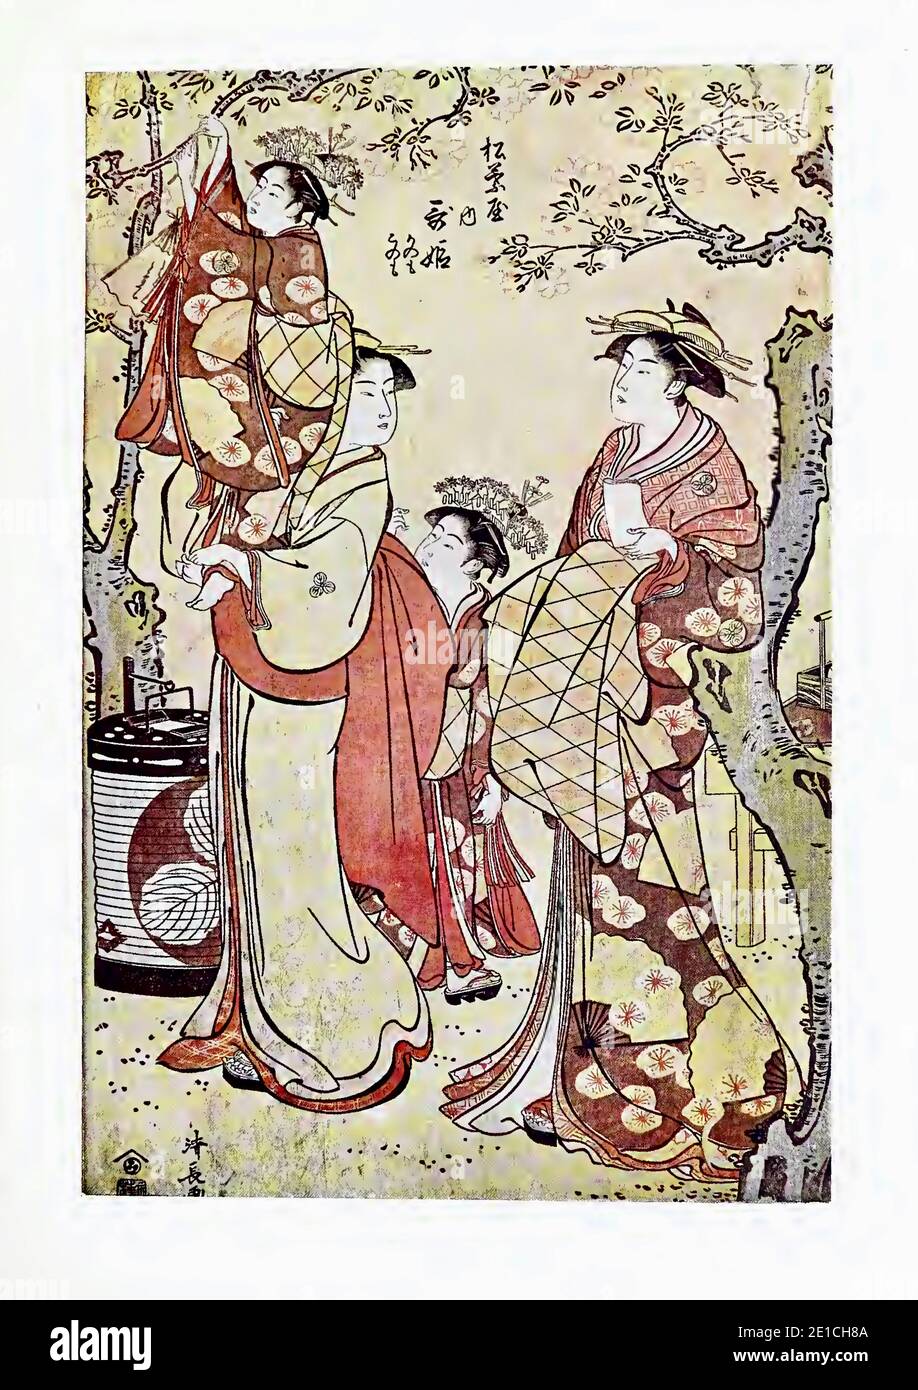 Letra japonesa de Kiyonaga titulada Chicas empatando poemas sobre árboles en flor en primavera. Foto de stock